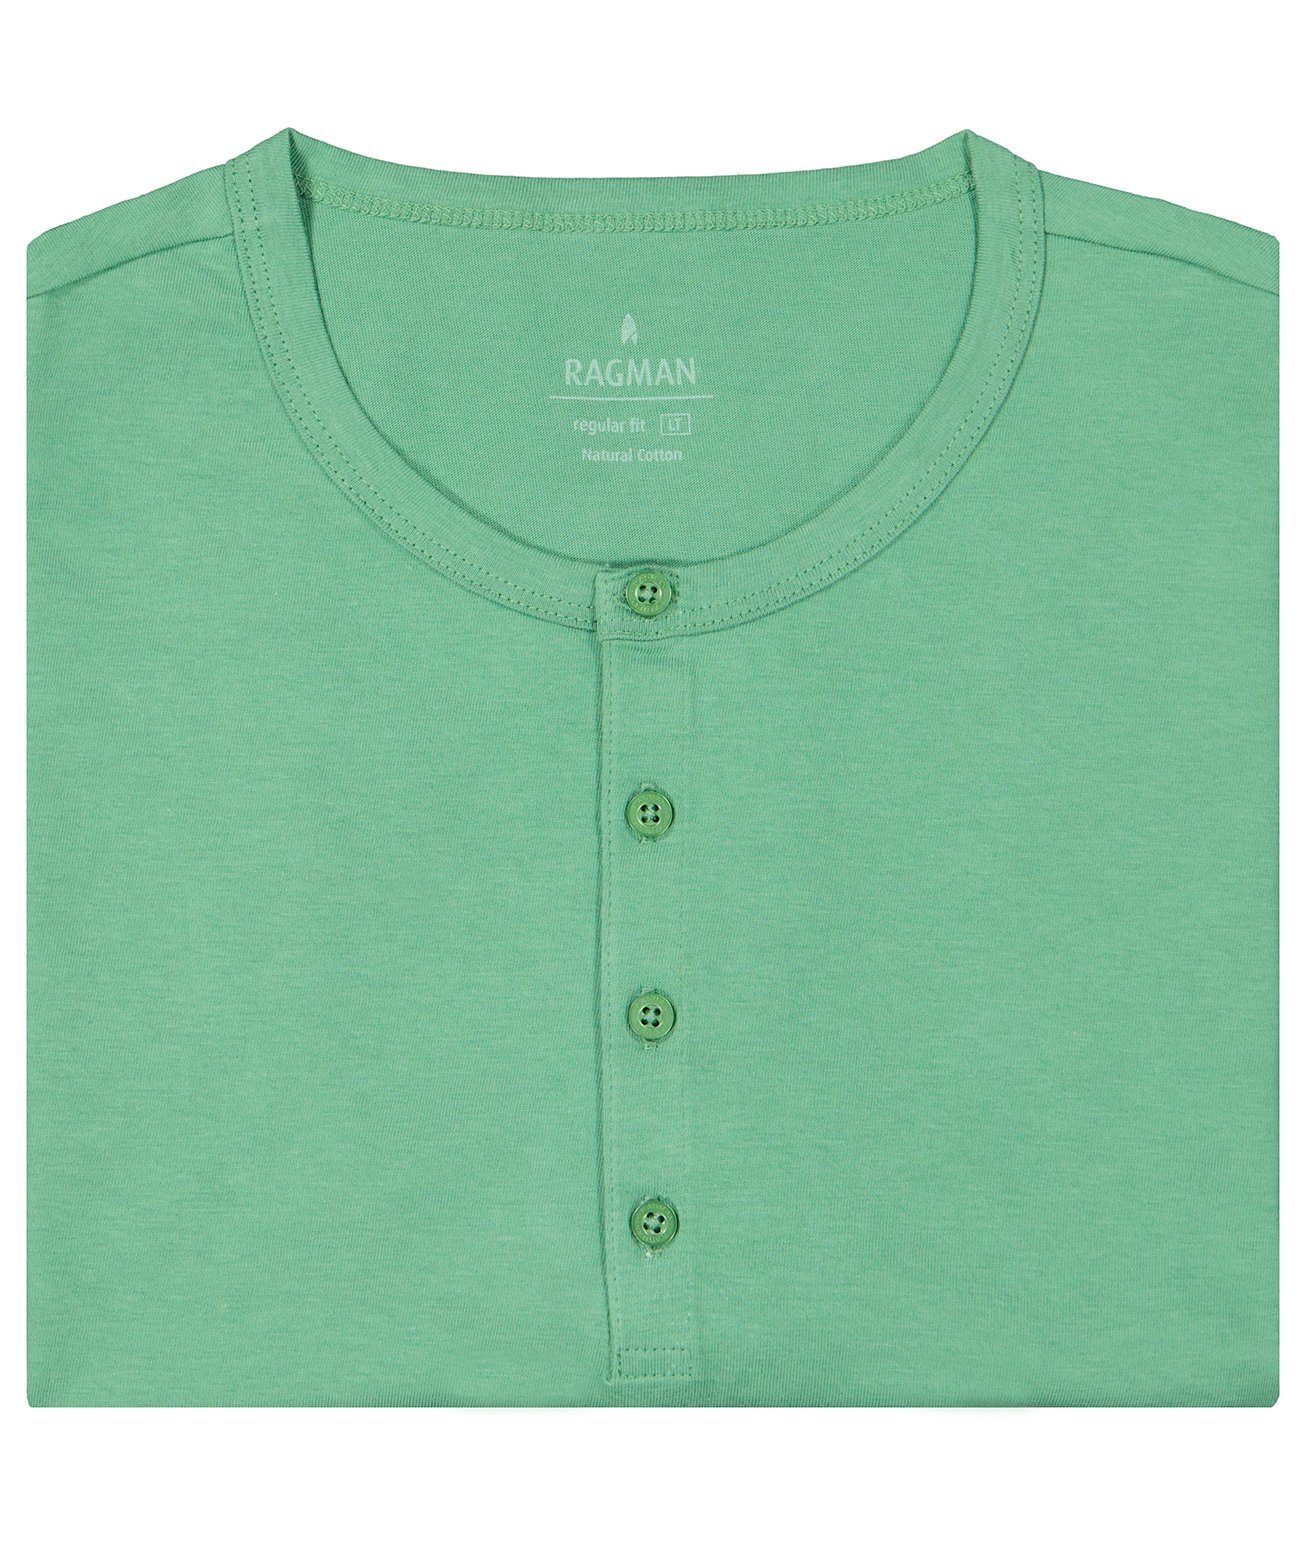 RAGMAN Longshirt Grasgrün-370 | T-Shirts